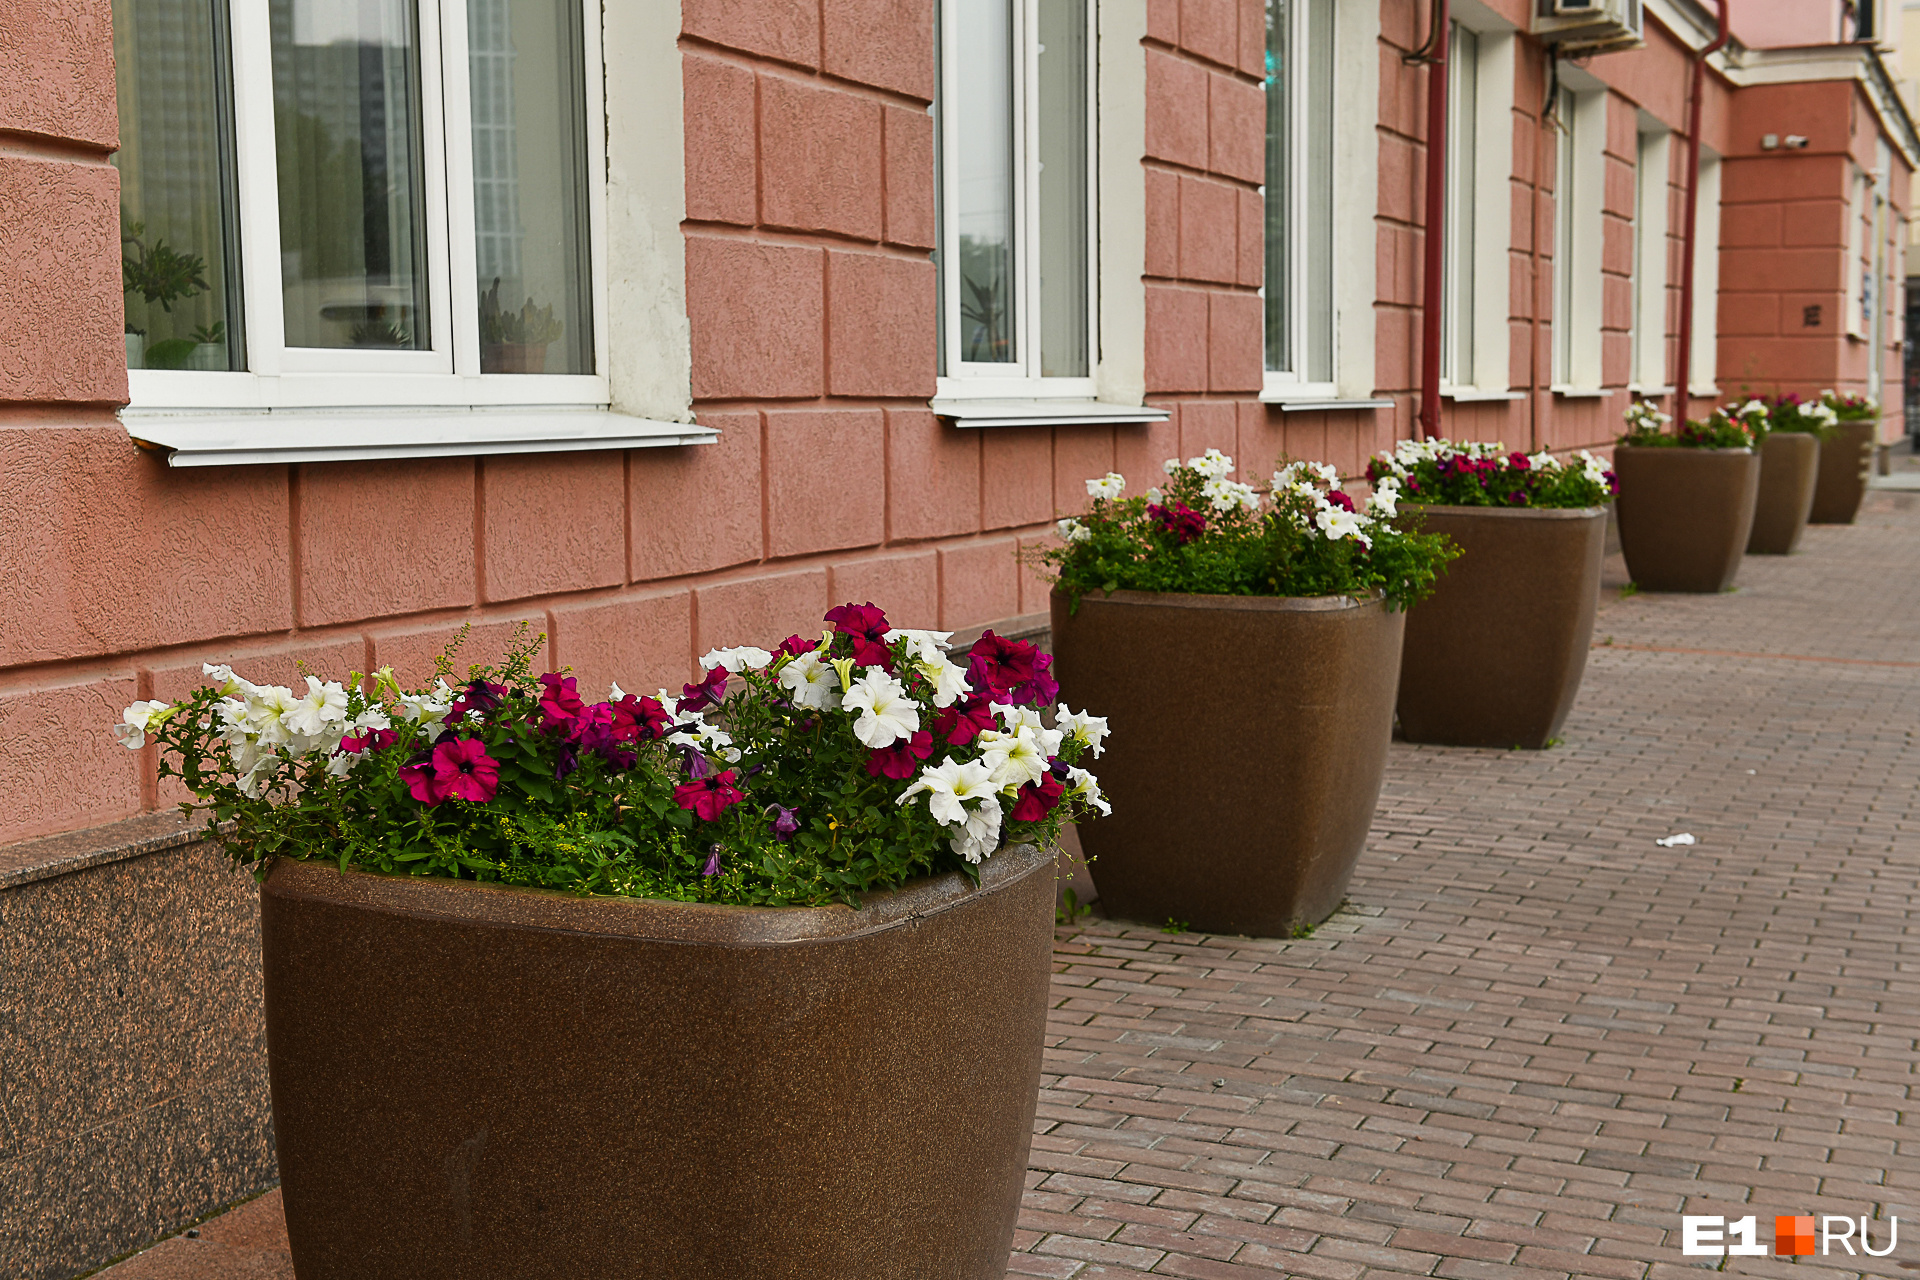 Зато у администрации Чкаловского района прелестные вазоны с цветами